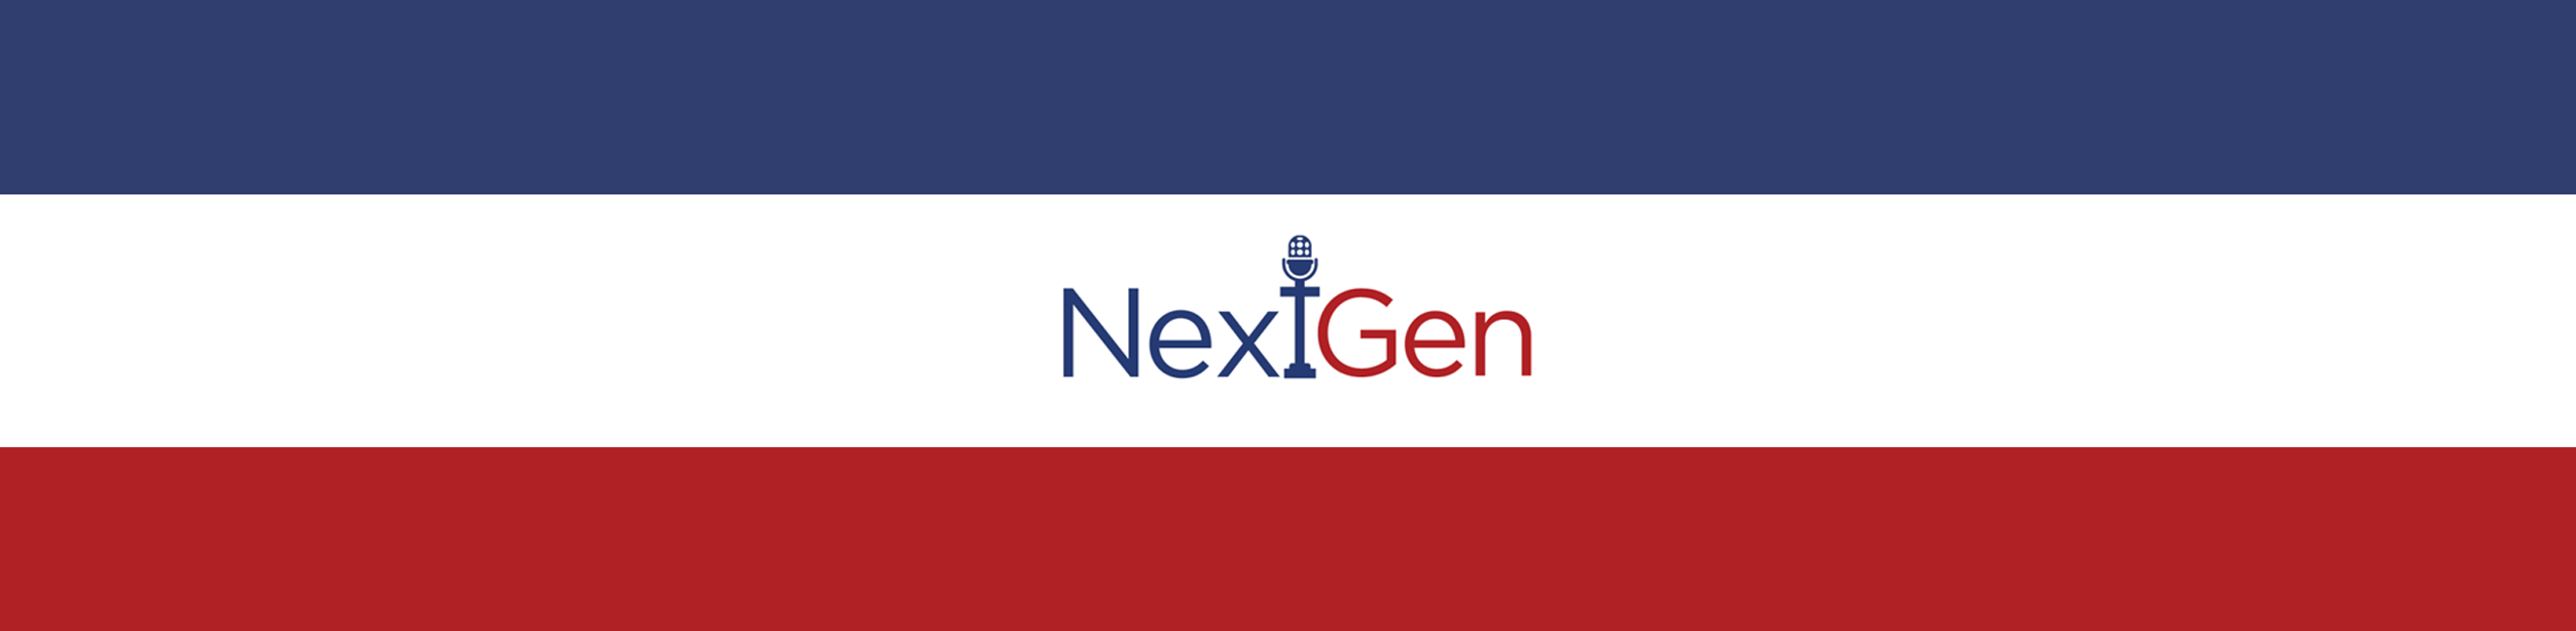 NextGen logo header